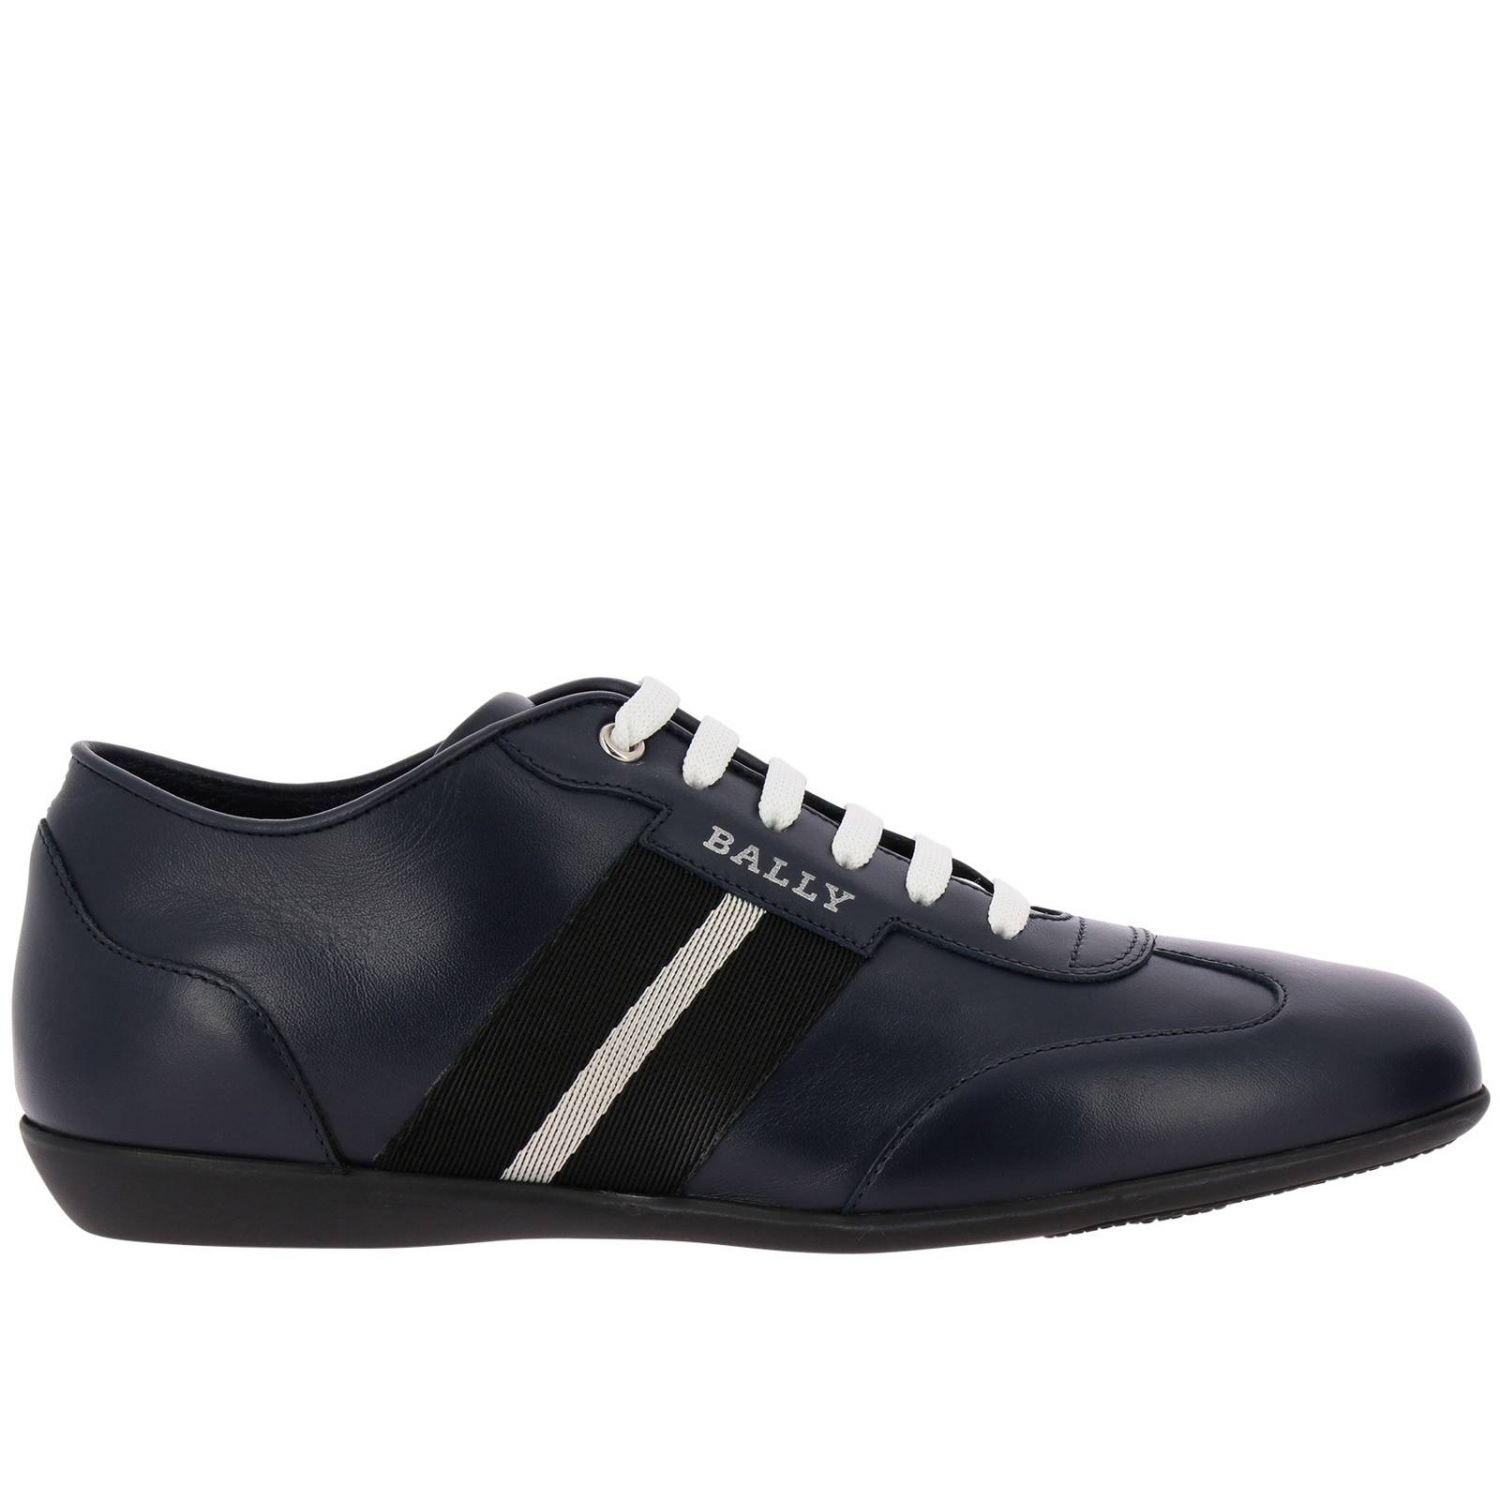 Shoes men Bally | Sneakers Bally Men Blue | Sneakers Bally 593656 19312 ...